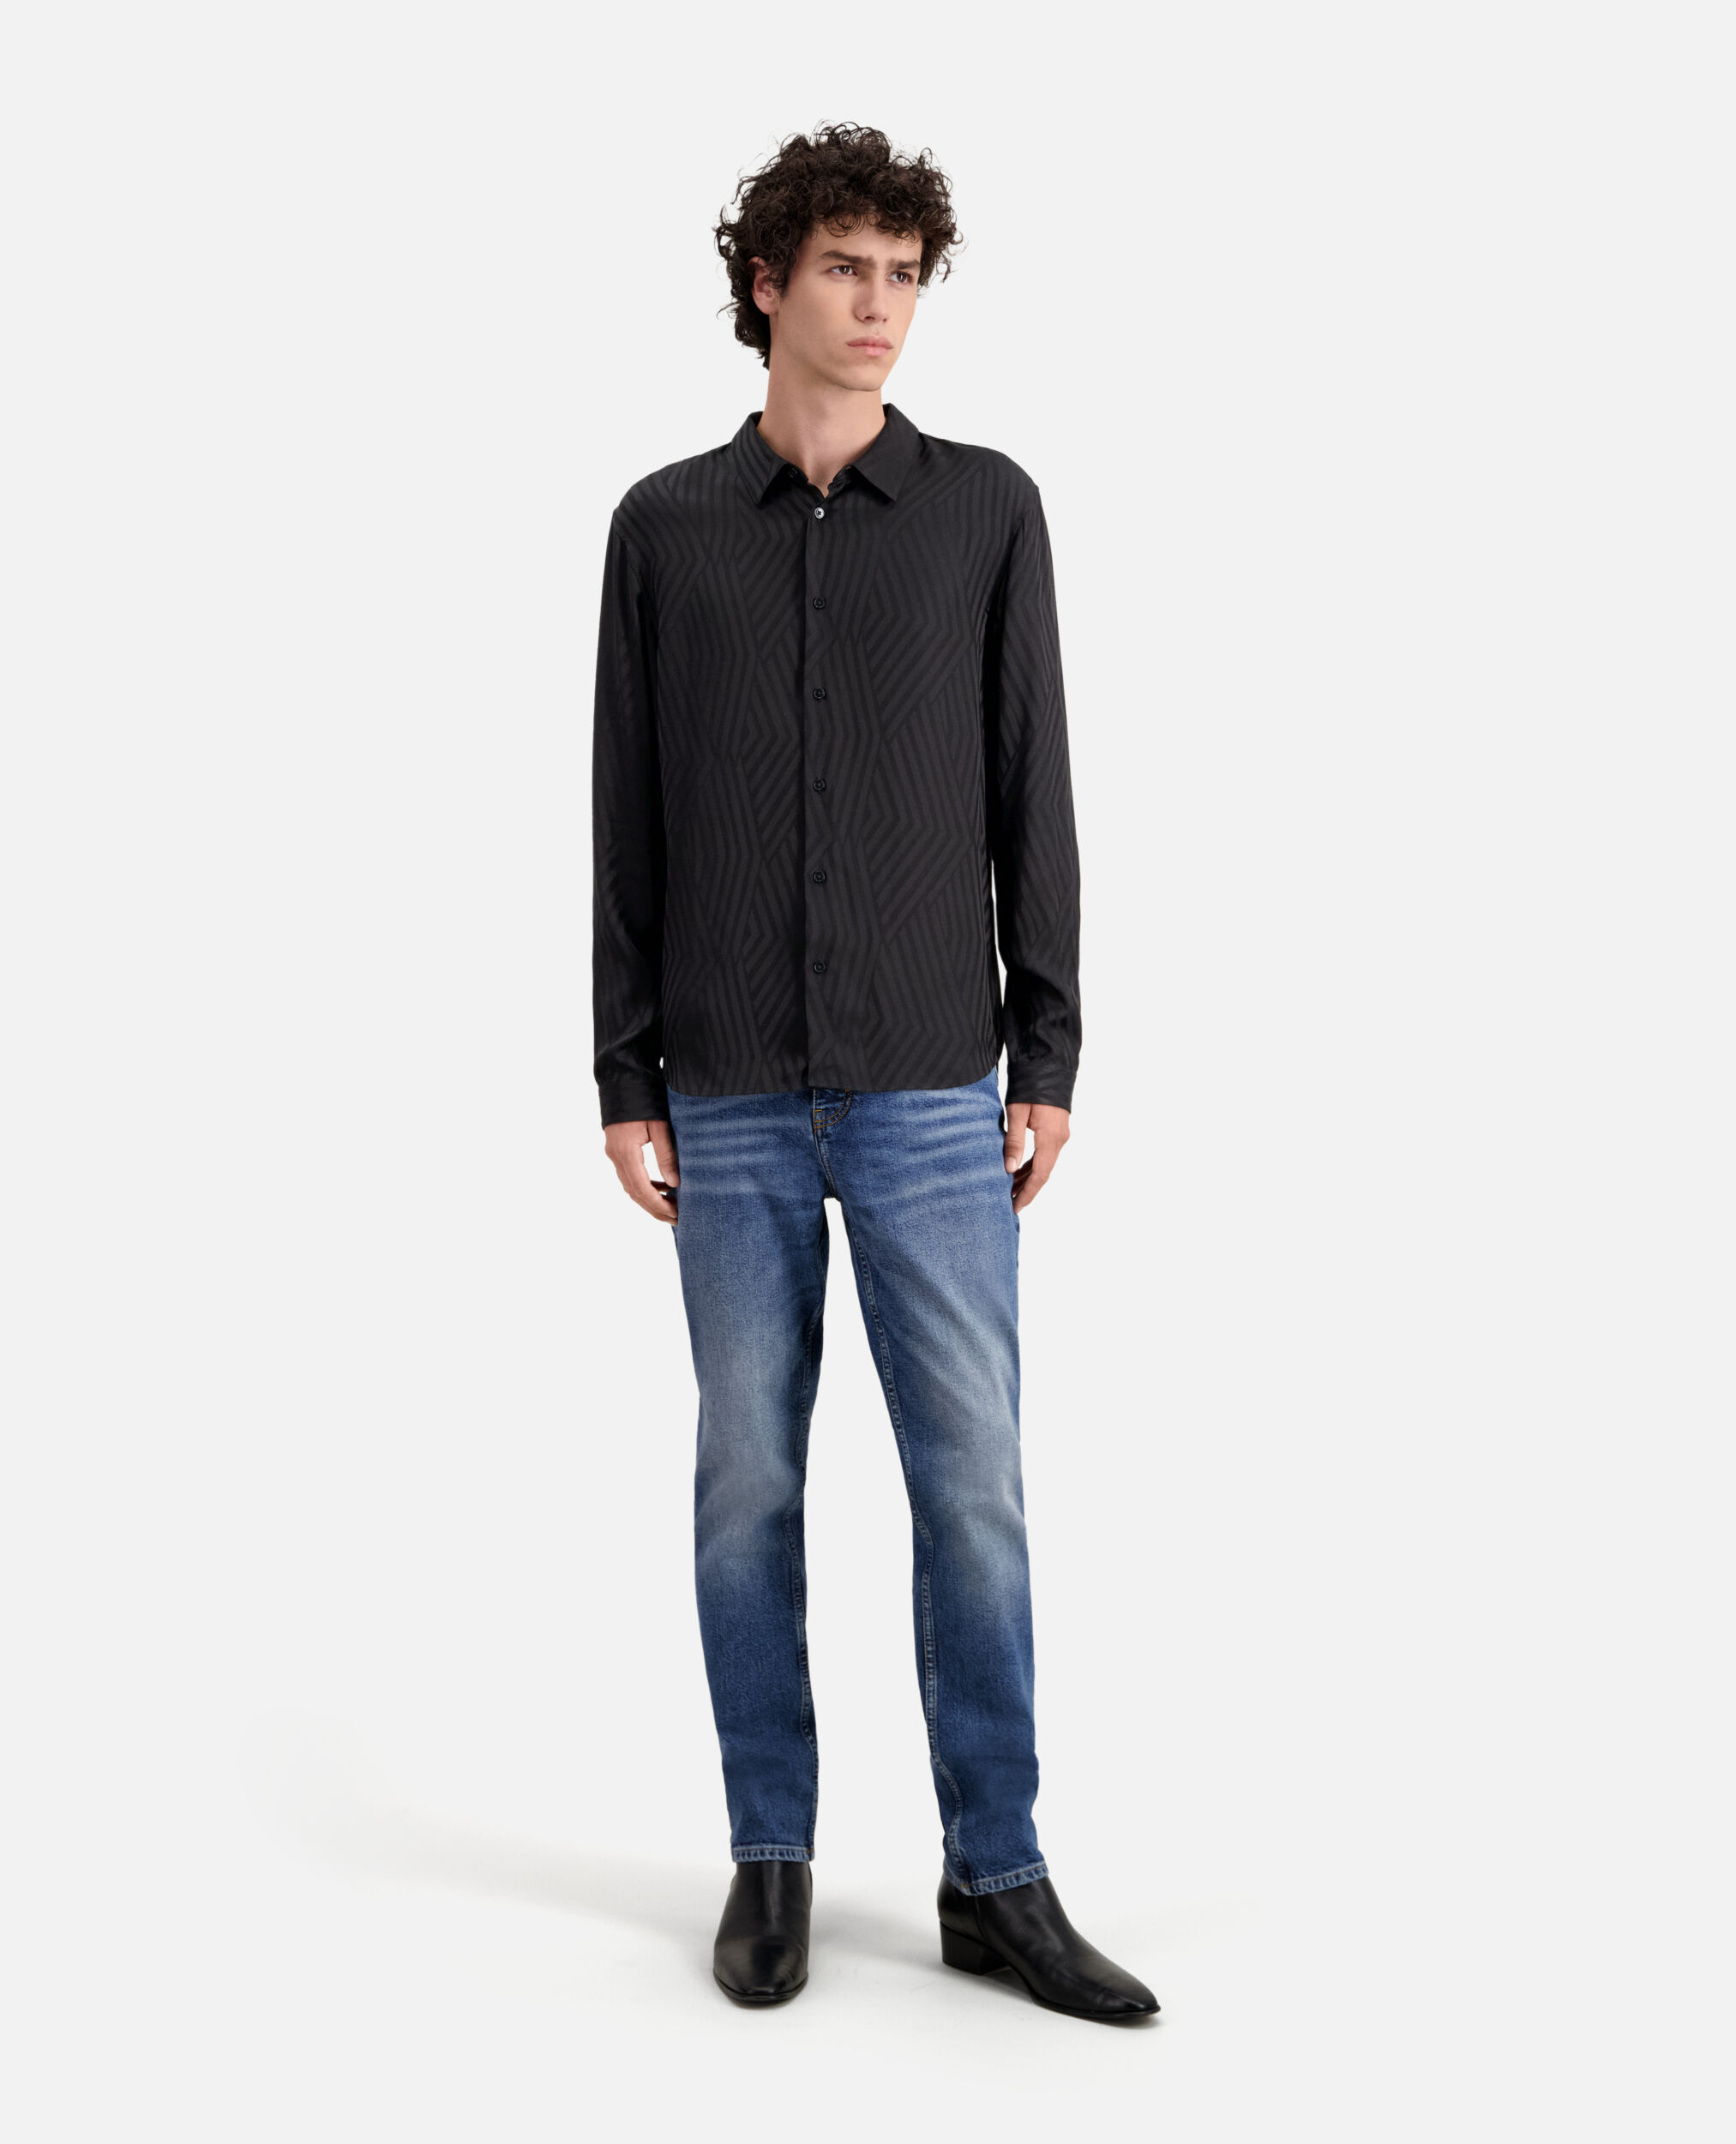 US shirt Black jacquard geometric | Kooples - The